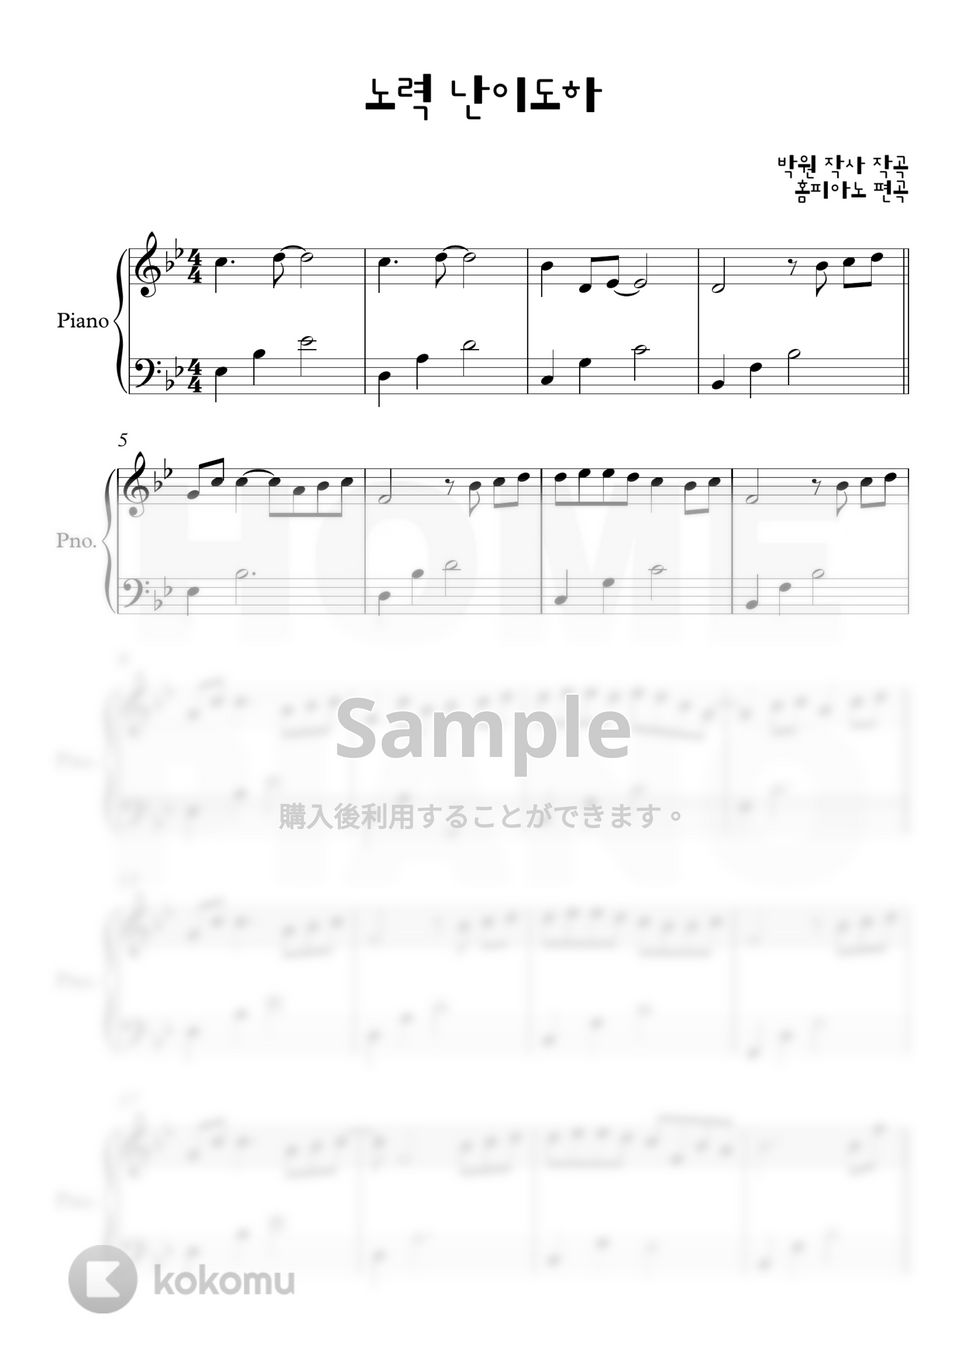 パク・ウォン - 努力 (初級) by HOME PIANO